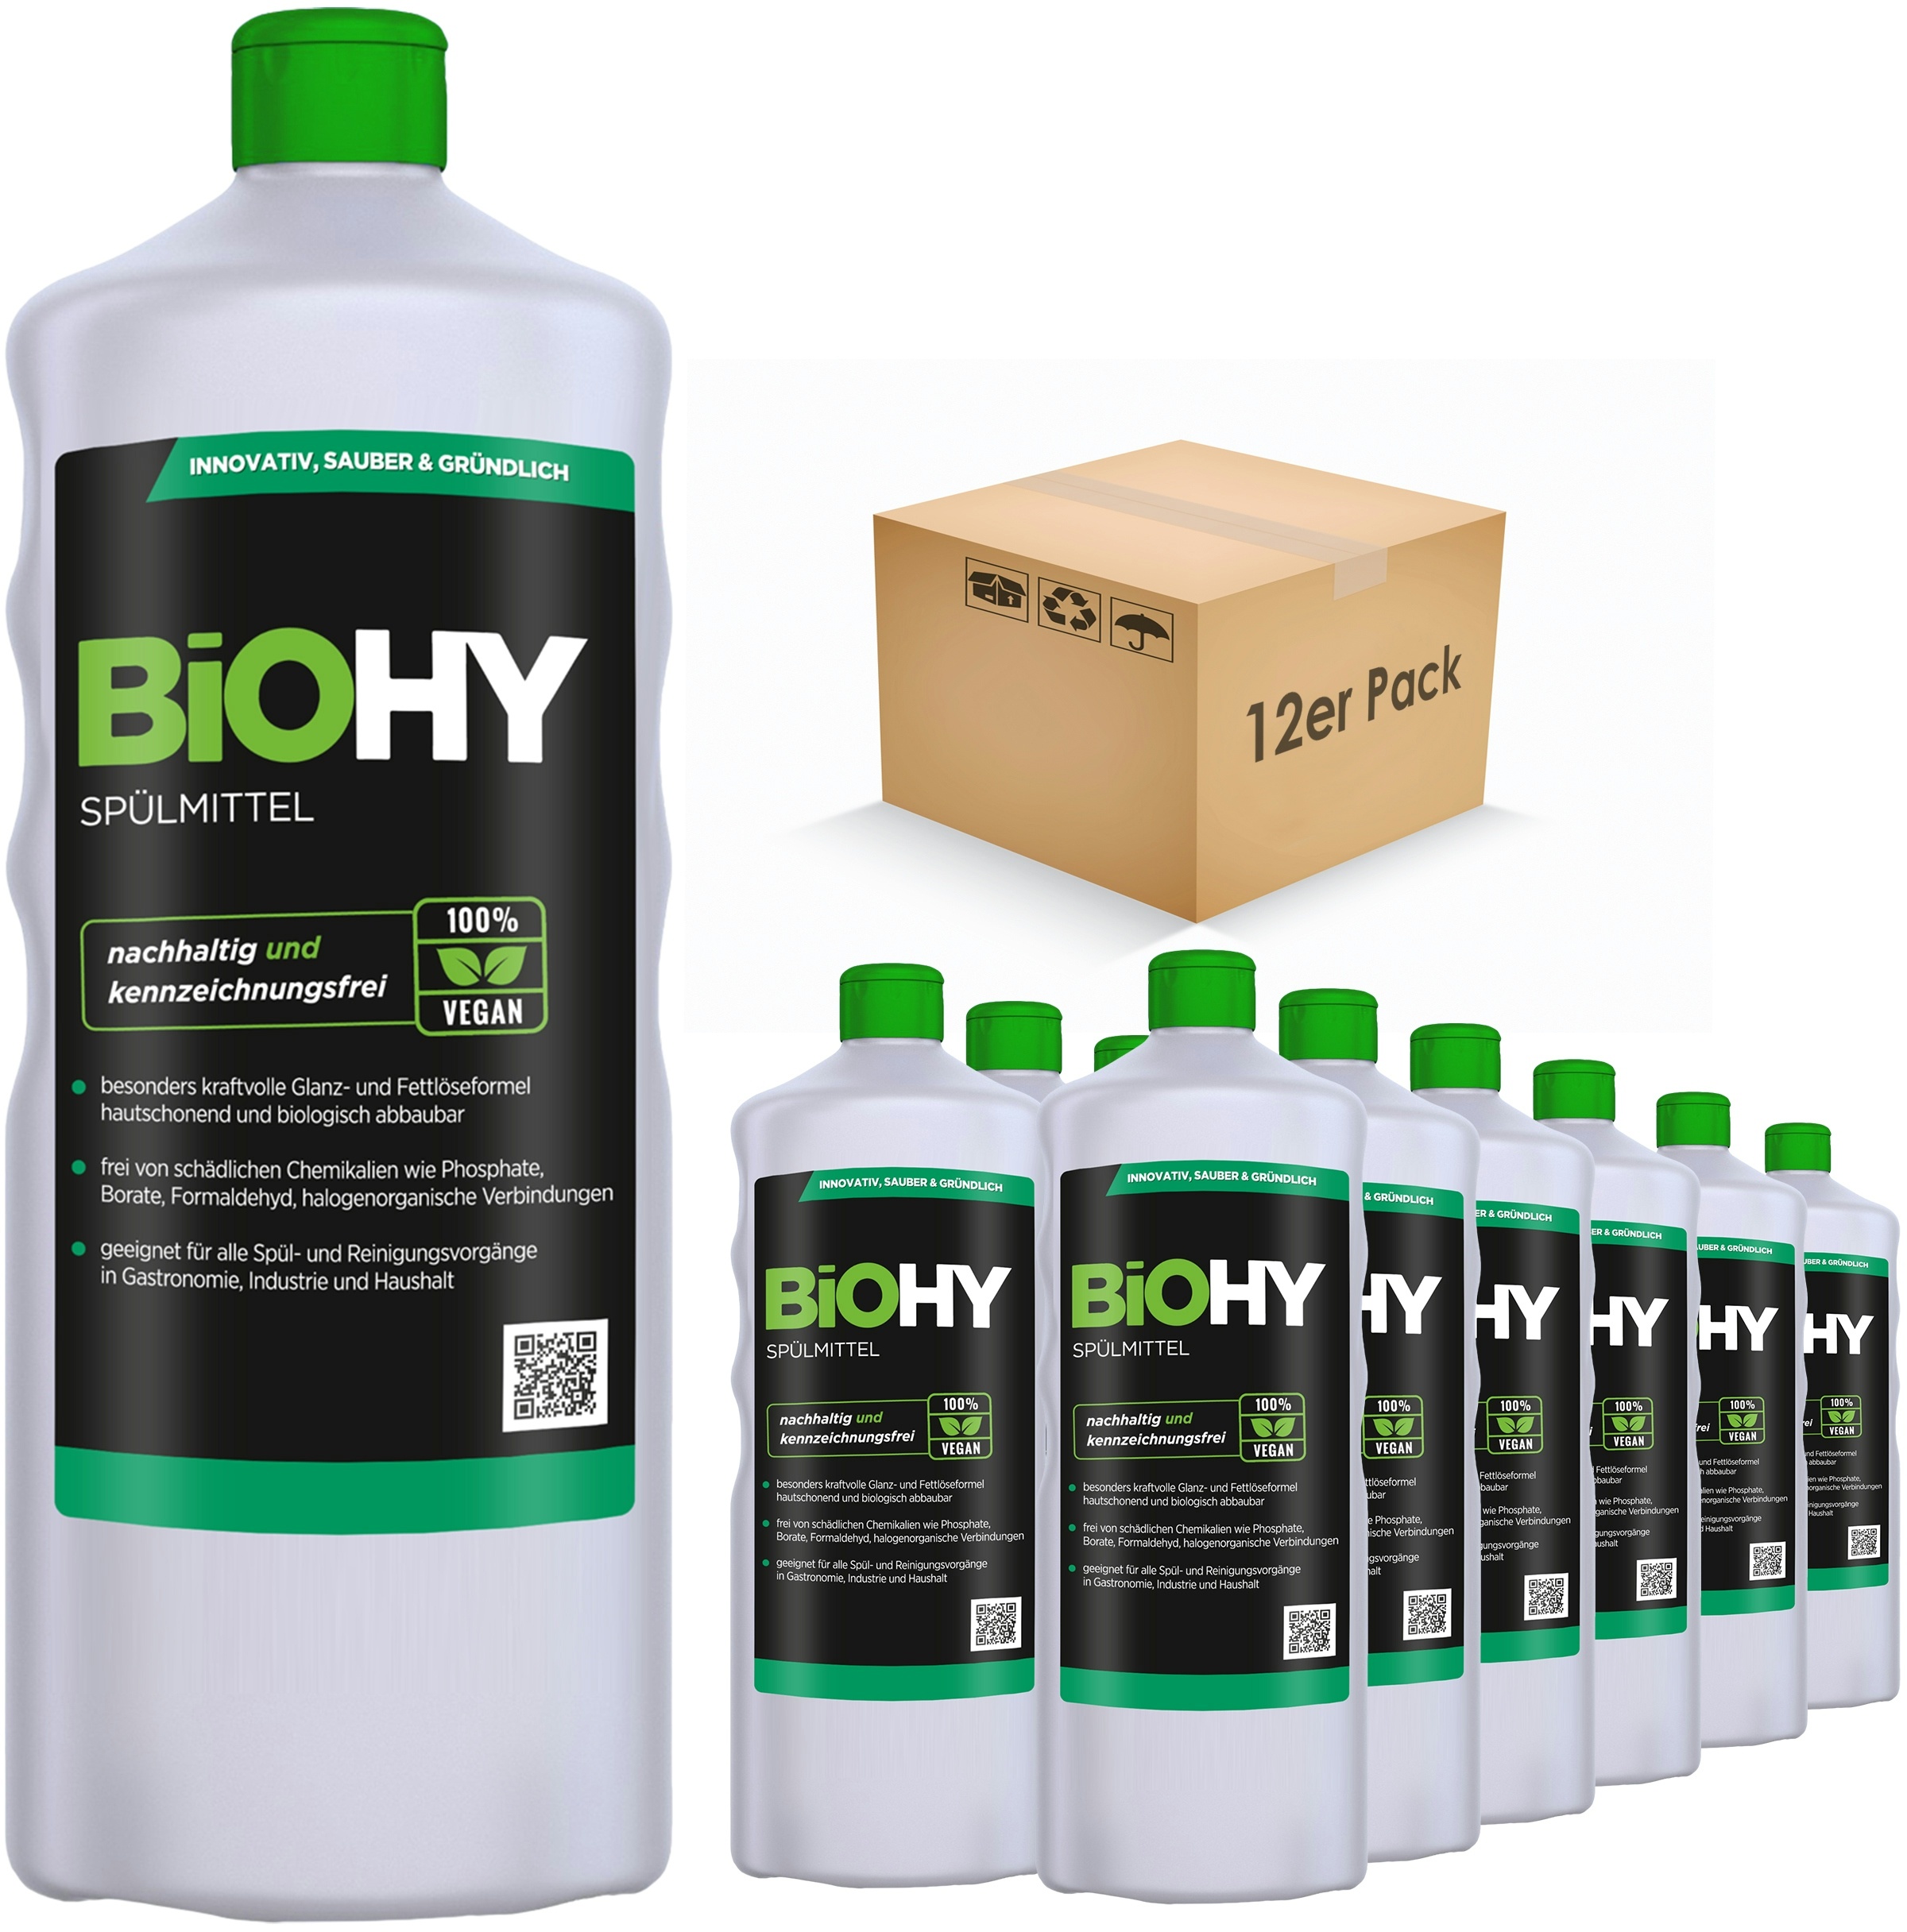 BiOHY Spülmittel (12x1l Flasche) | Frei von schädlichen Chemikalien & biologisch abbaubar | Glanz- & Fettlöseformel